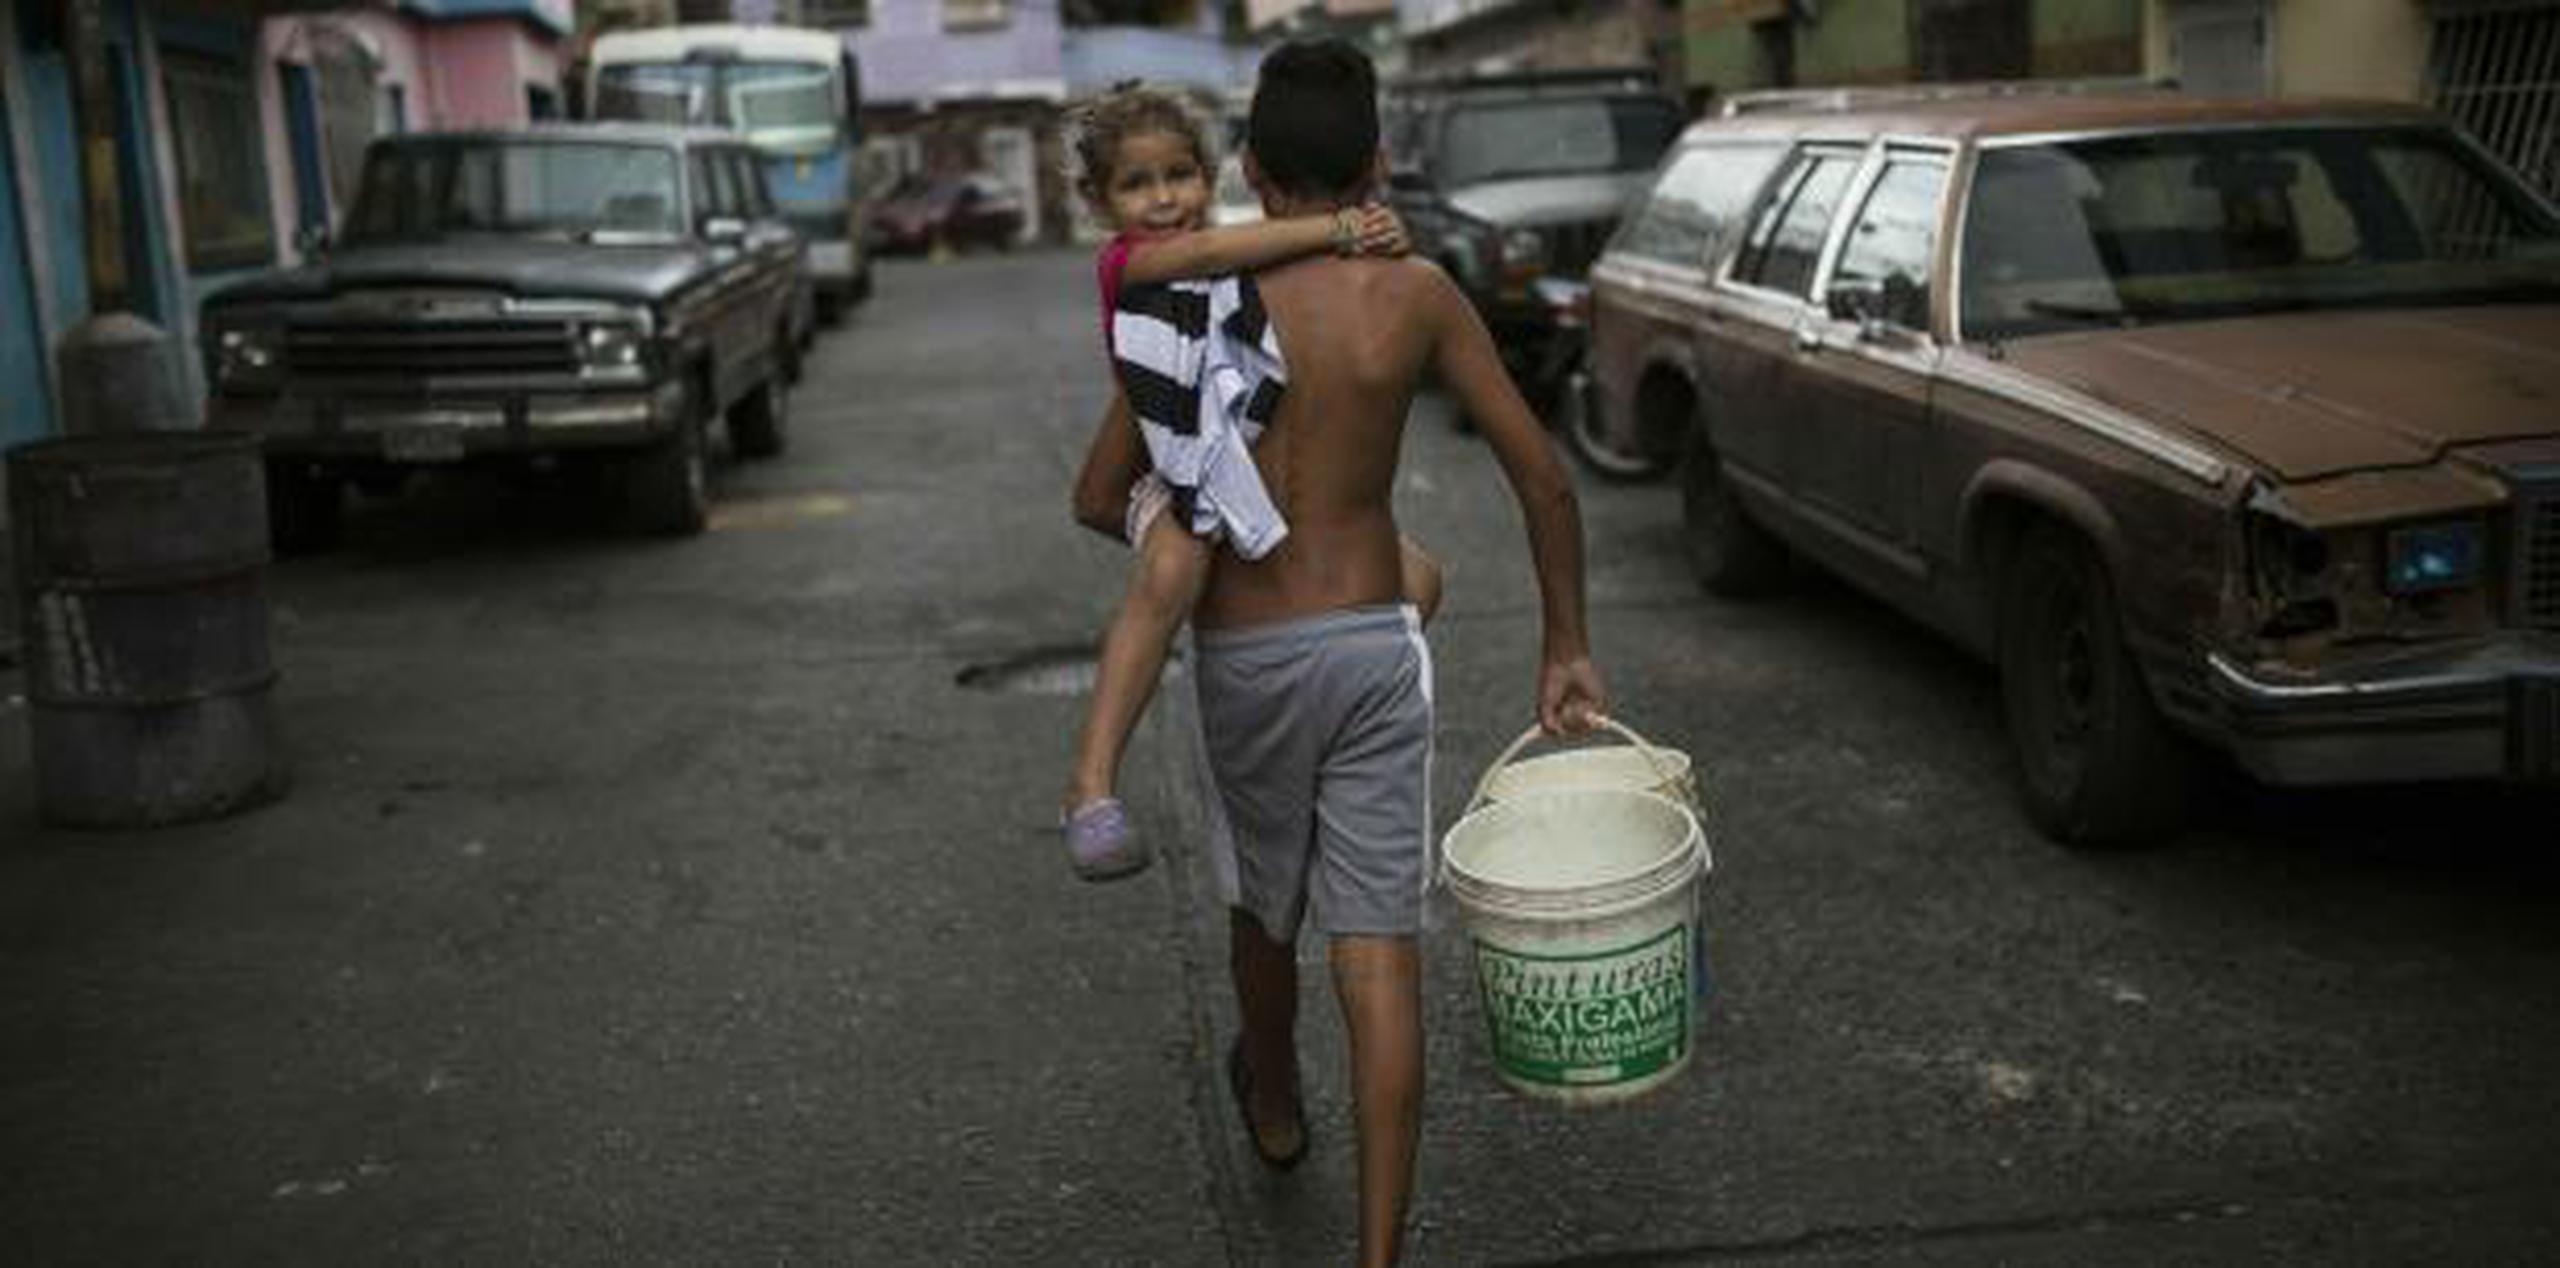 Las calles de Caracas recuperaron la tranquilidad el jueves tras la violencia de las dos jornadas previas. (AP)